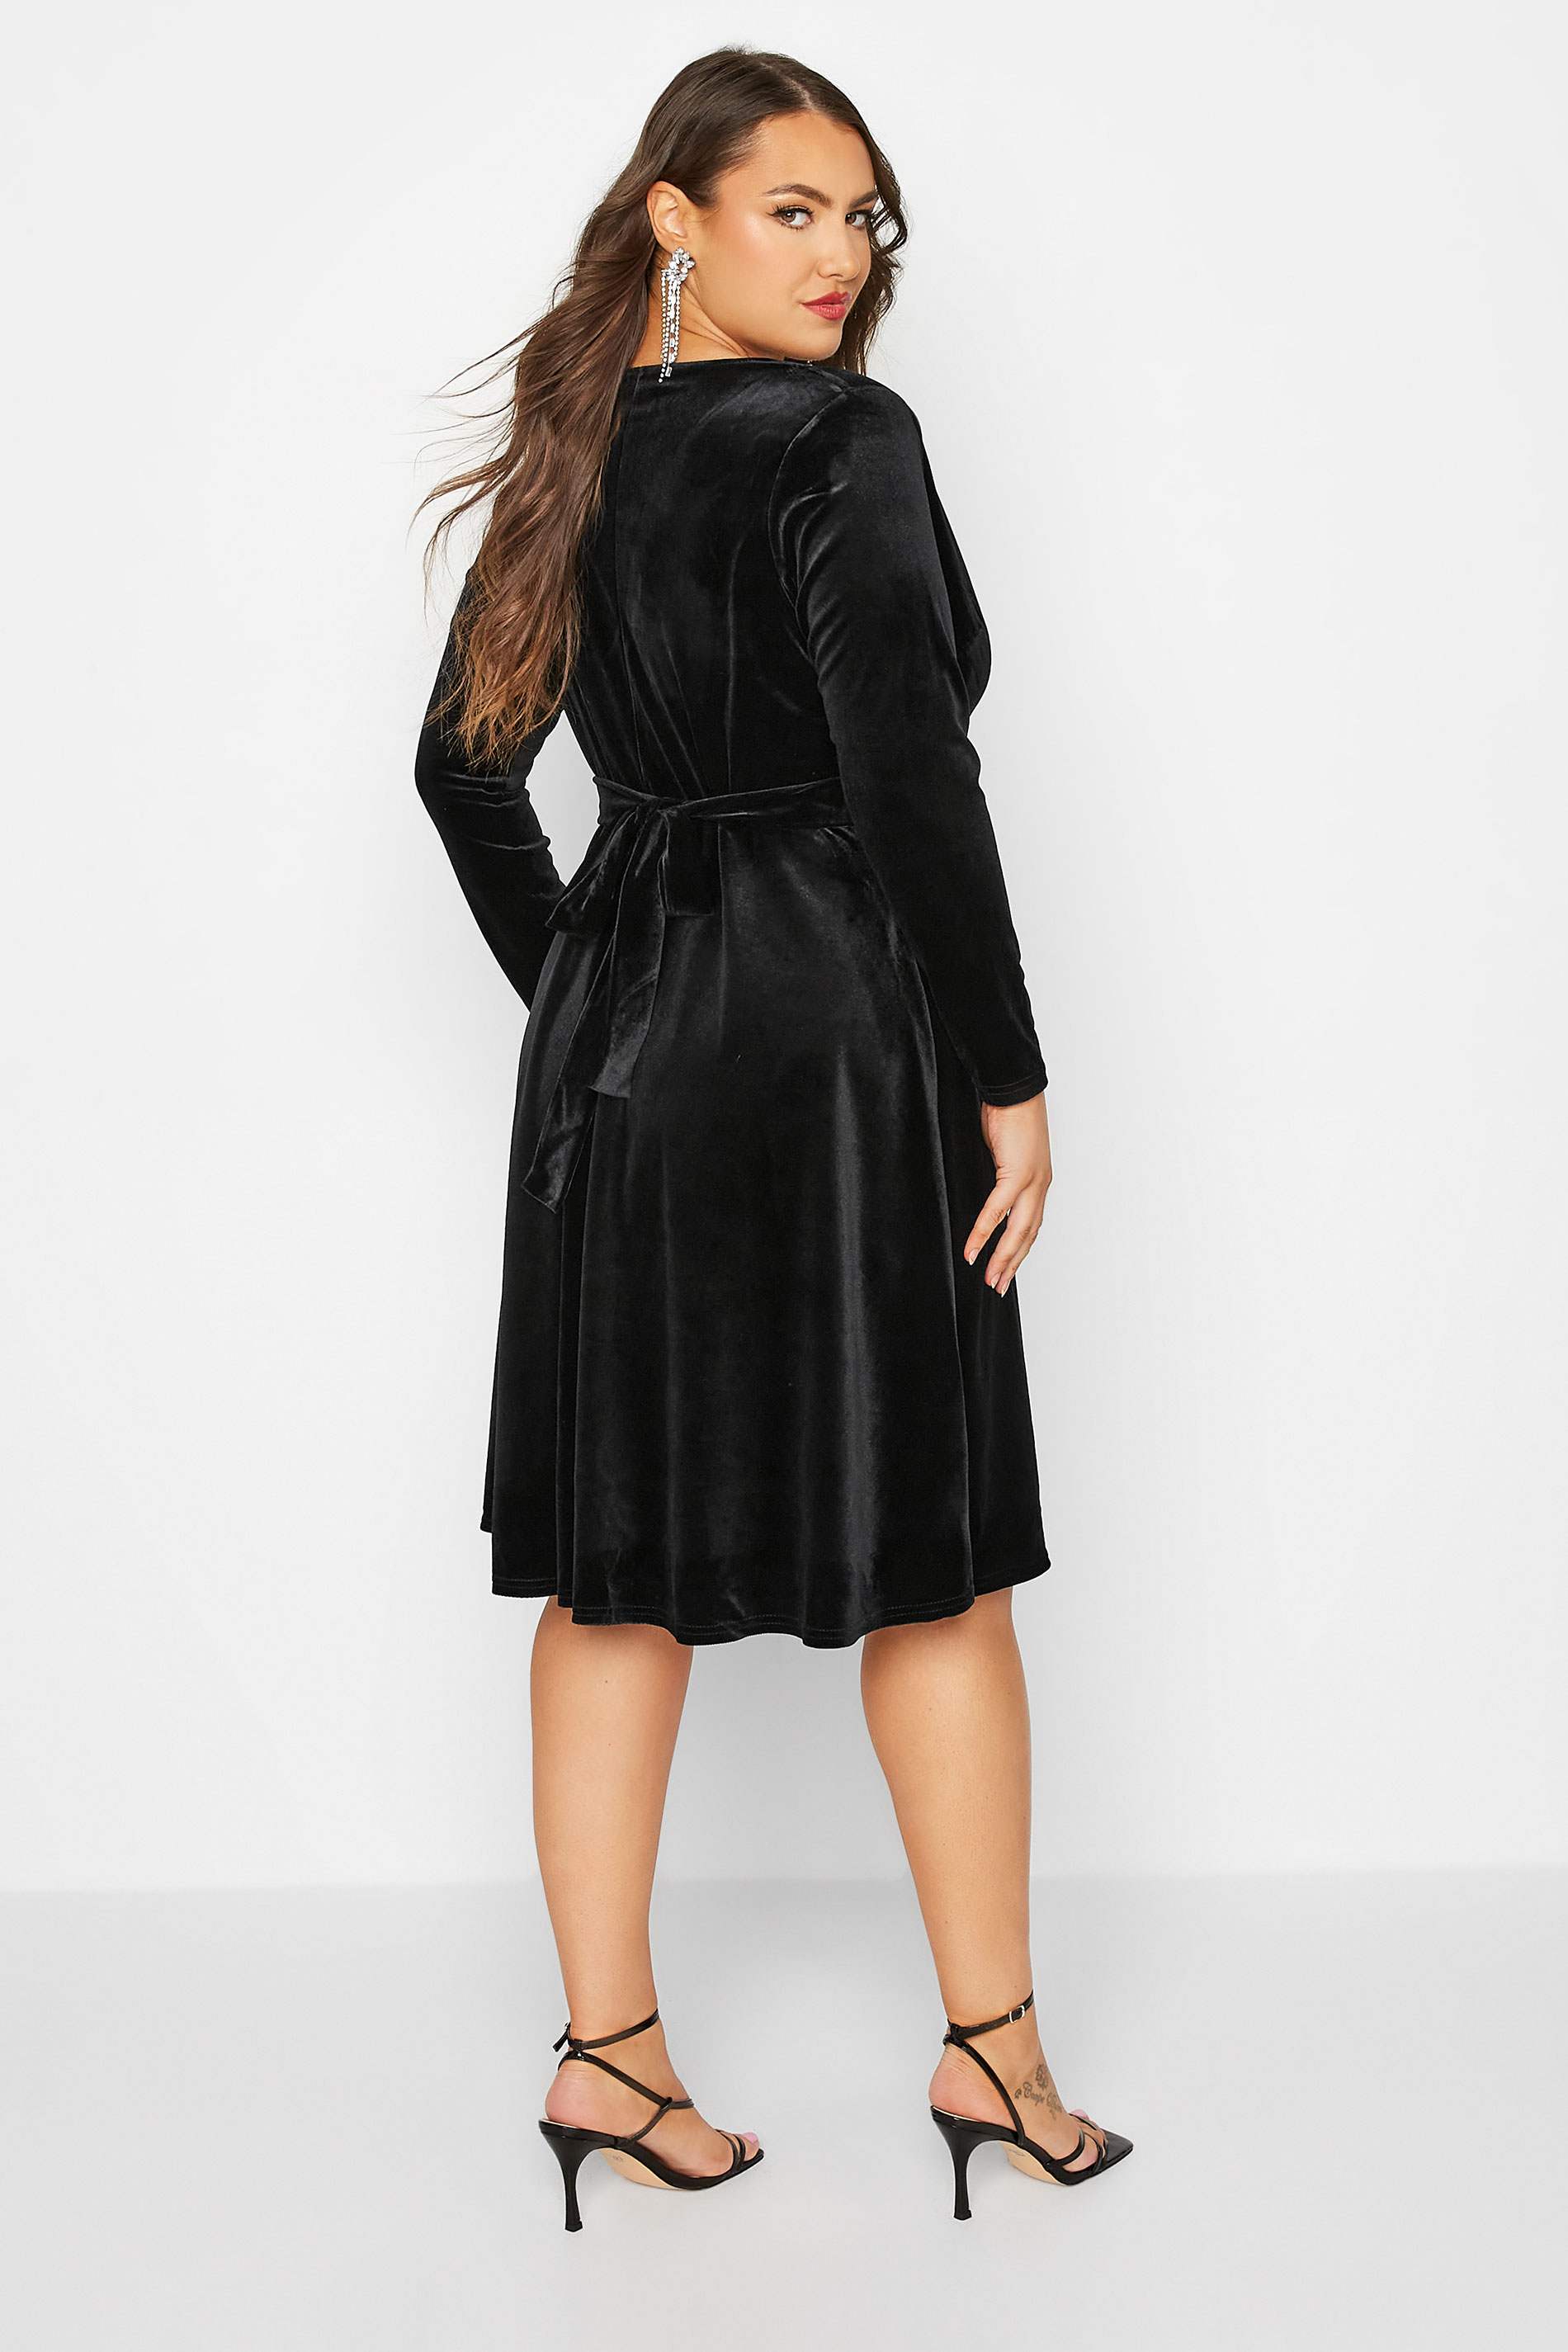 YOURS LONDON Curve Black Diamante Buckle Velvet Wrap Dress | Yours Clothing 3